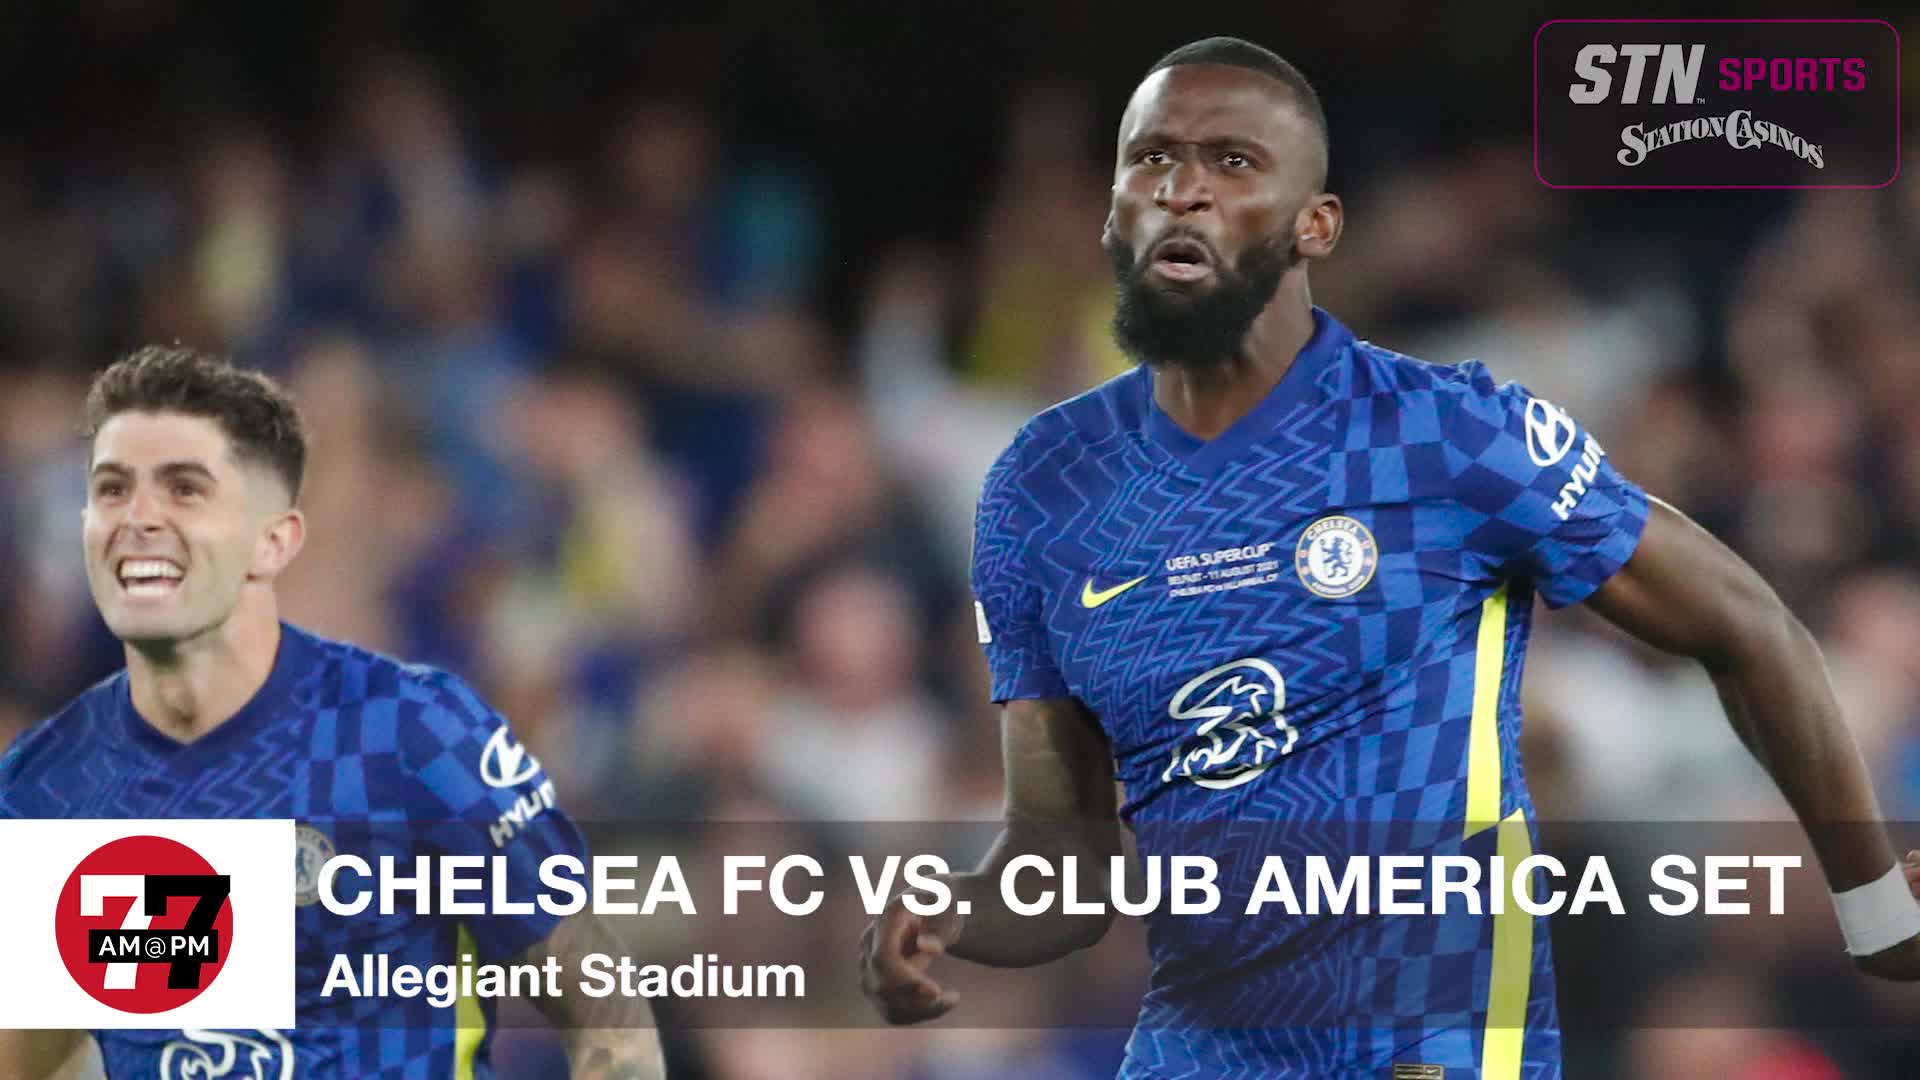 Chelsea FC vs. Club America Set at Allegiant Stadium